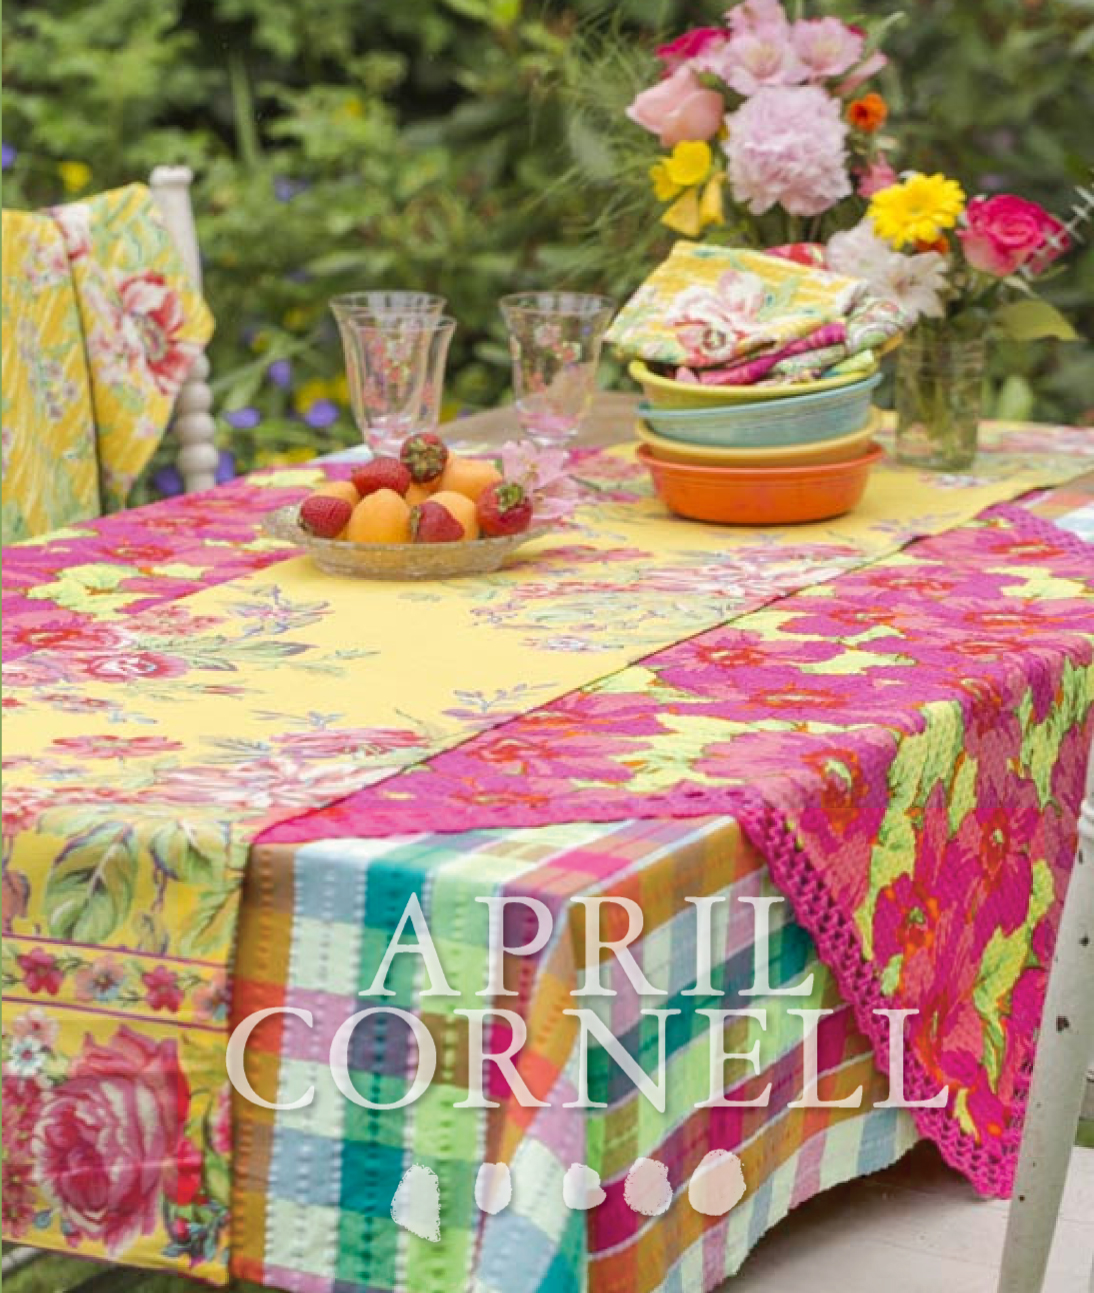 April Cornell Partnership